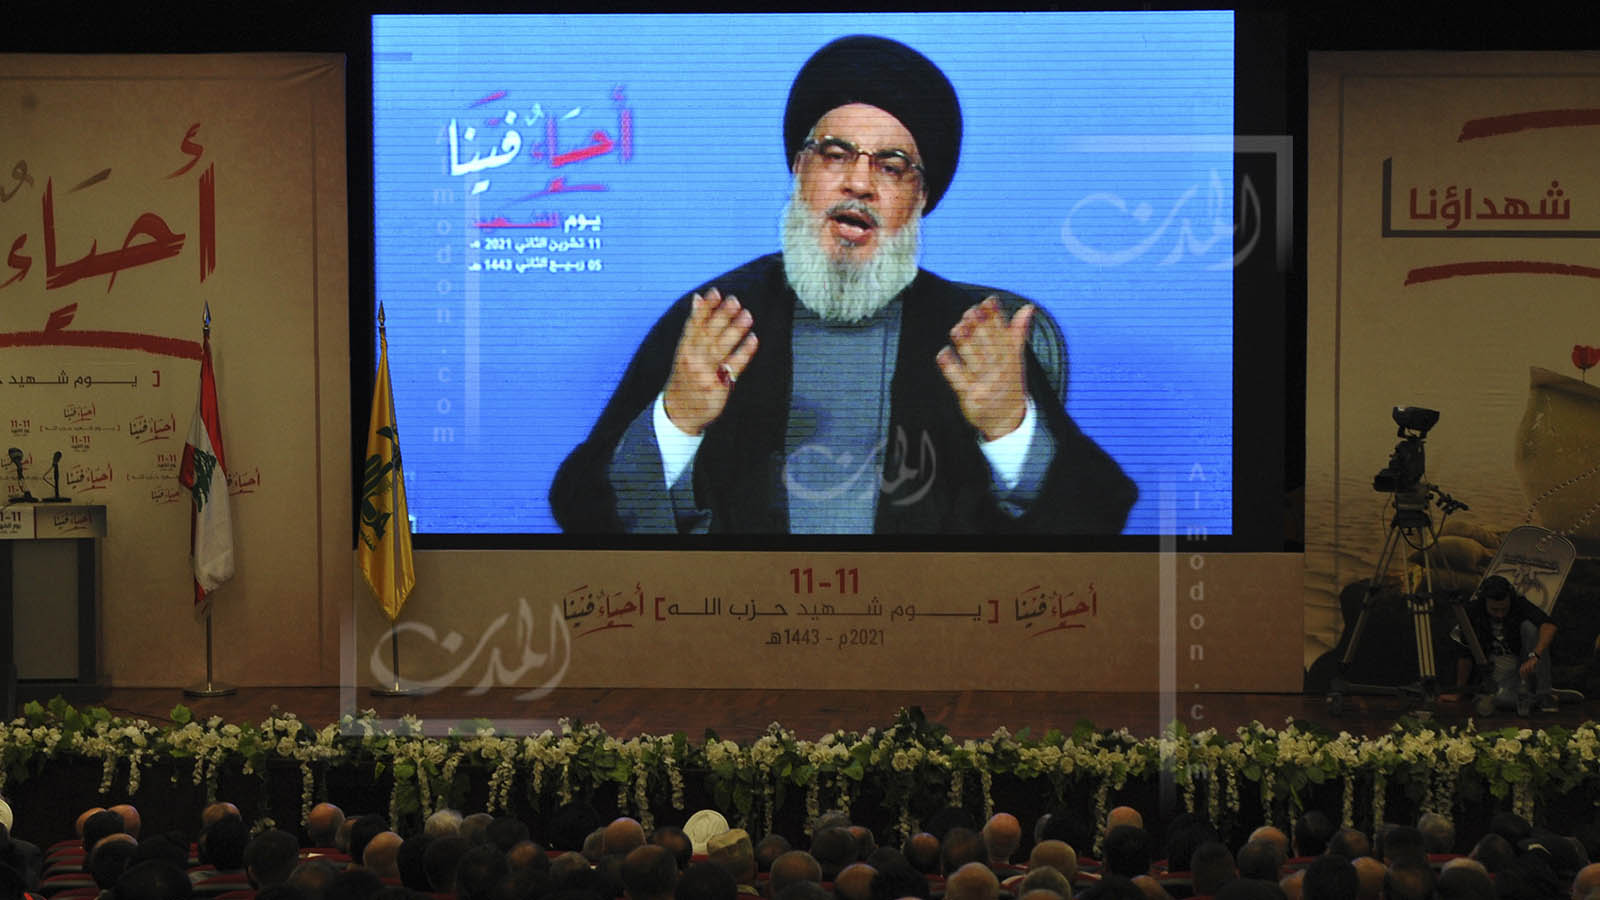 حزب الله للمسيحيين: في كفكم الجرح وبيدكم الدواء